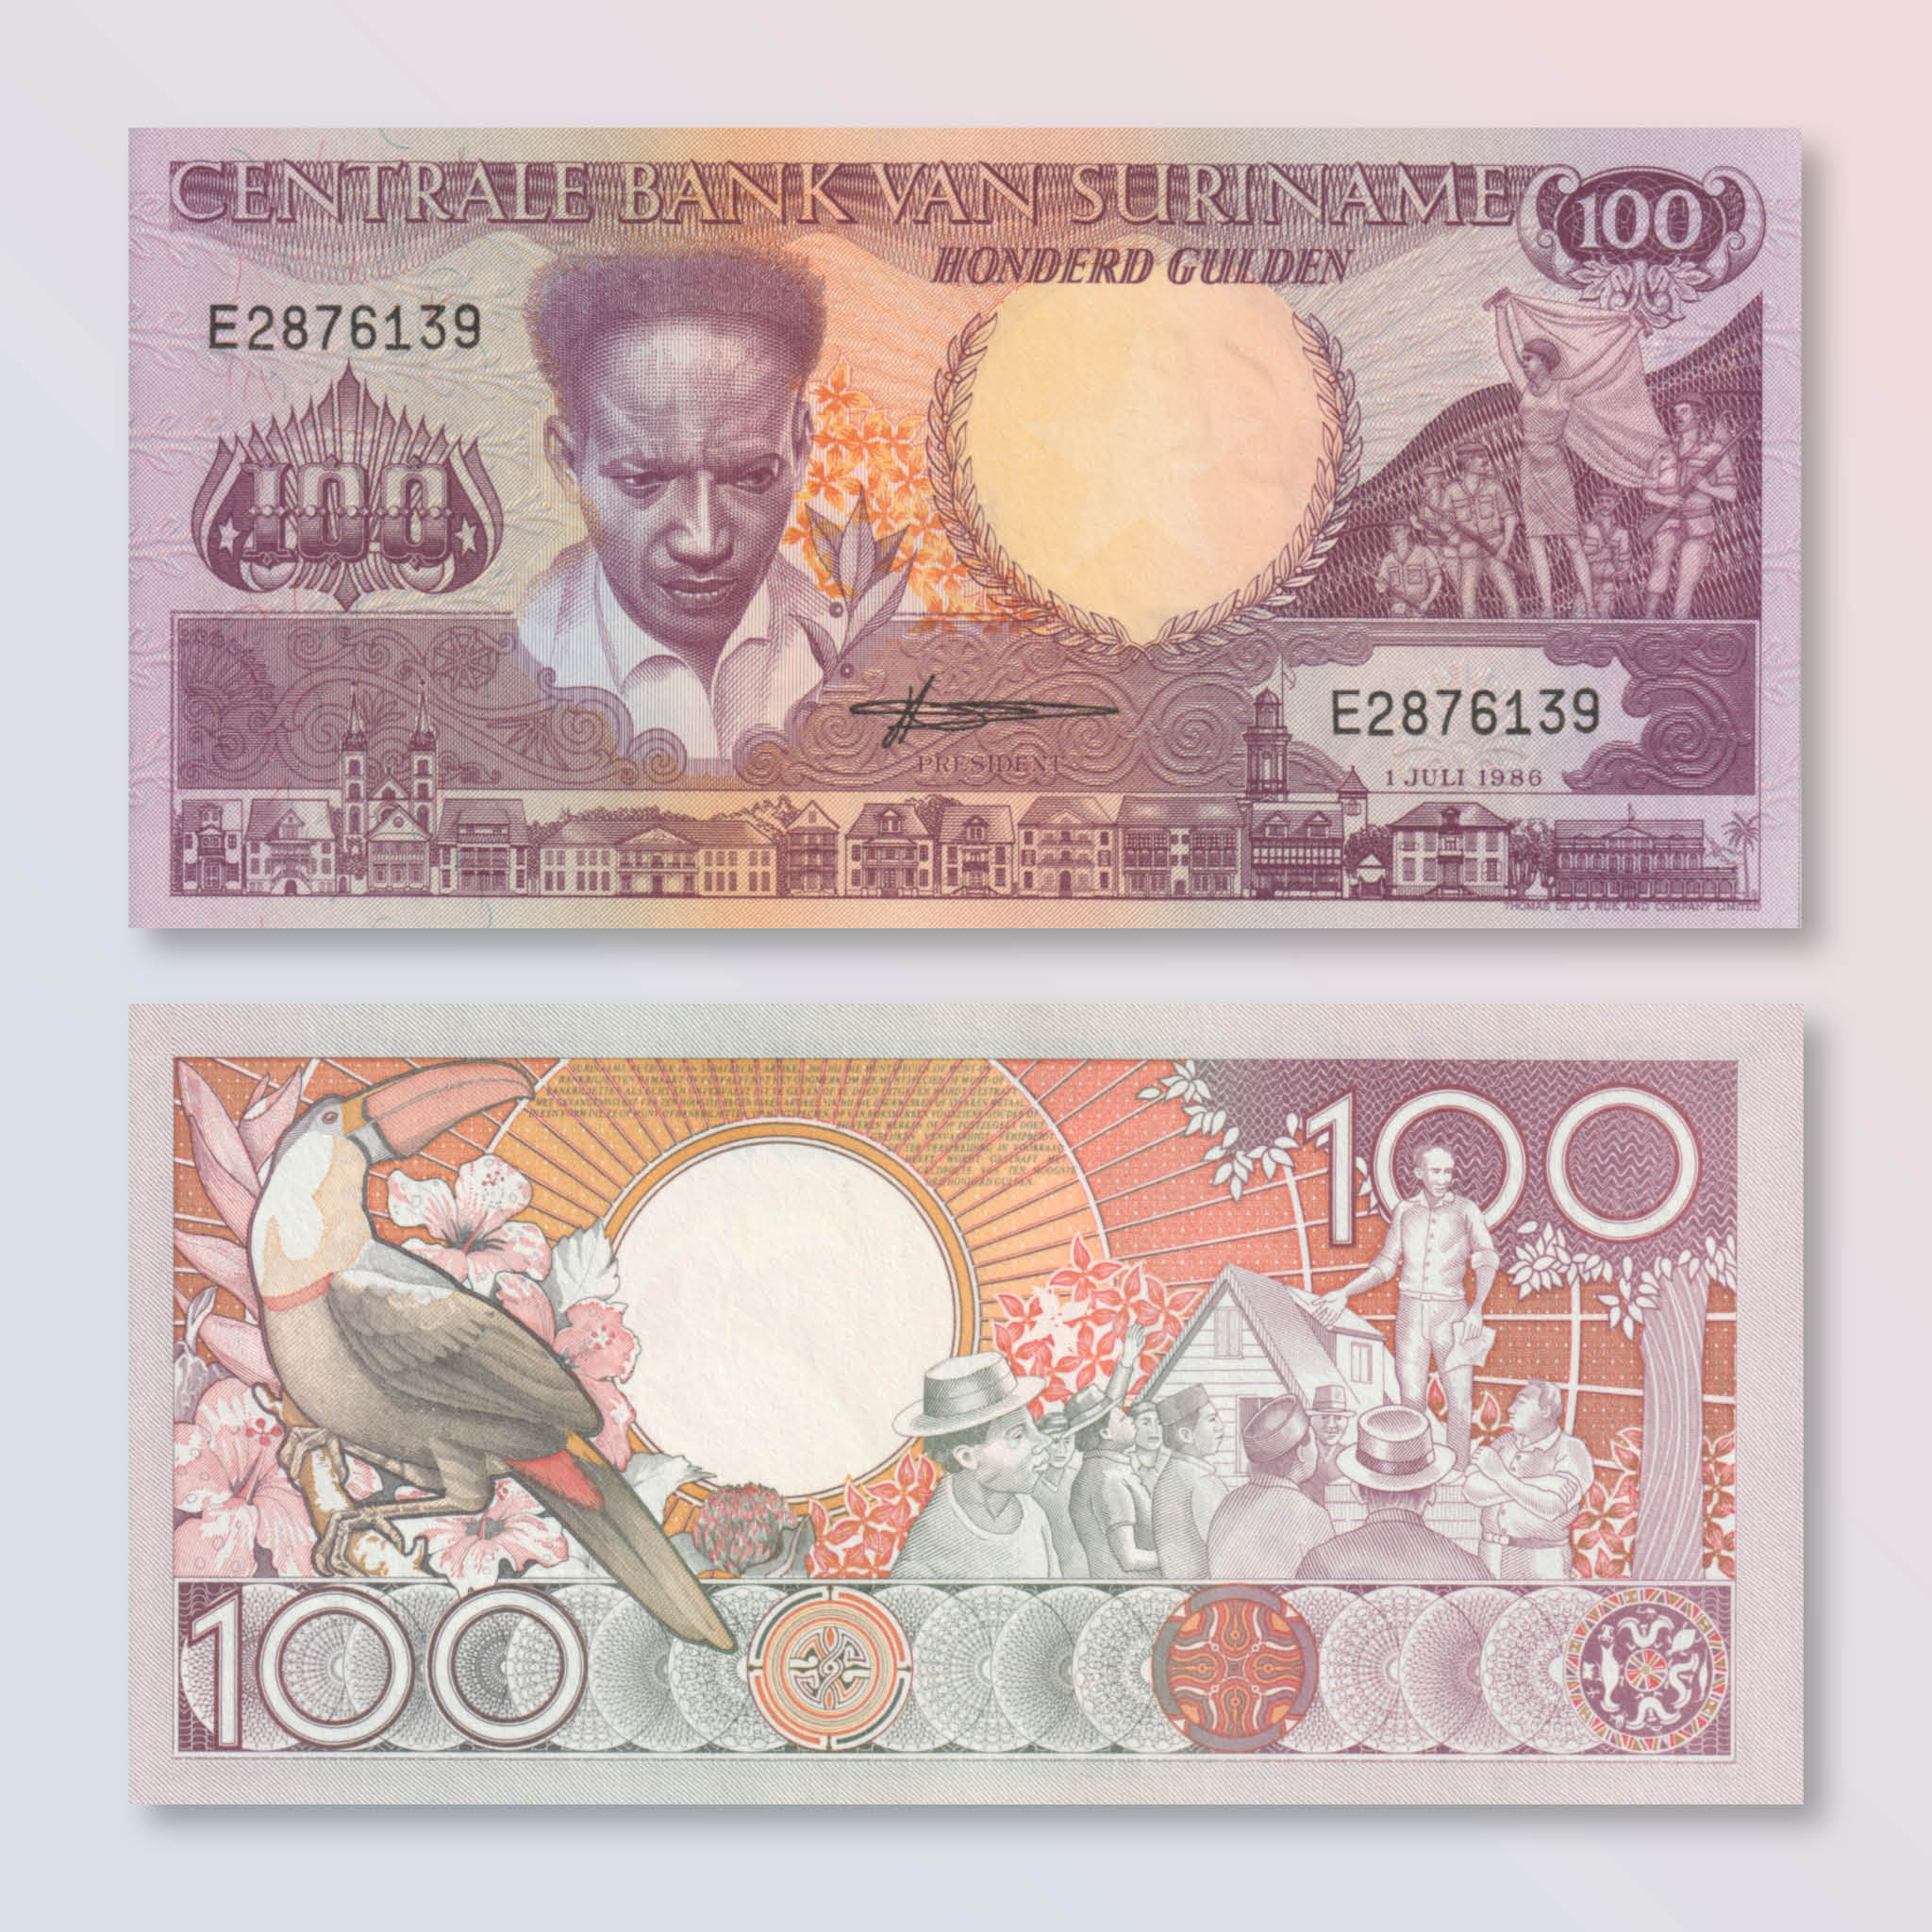 Suriname 100 Gulden, 1986, B519a, P133a, UNC - Robert's World Money - World Banknotes